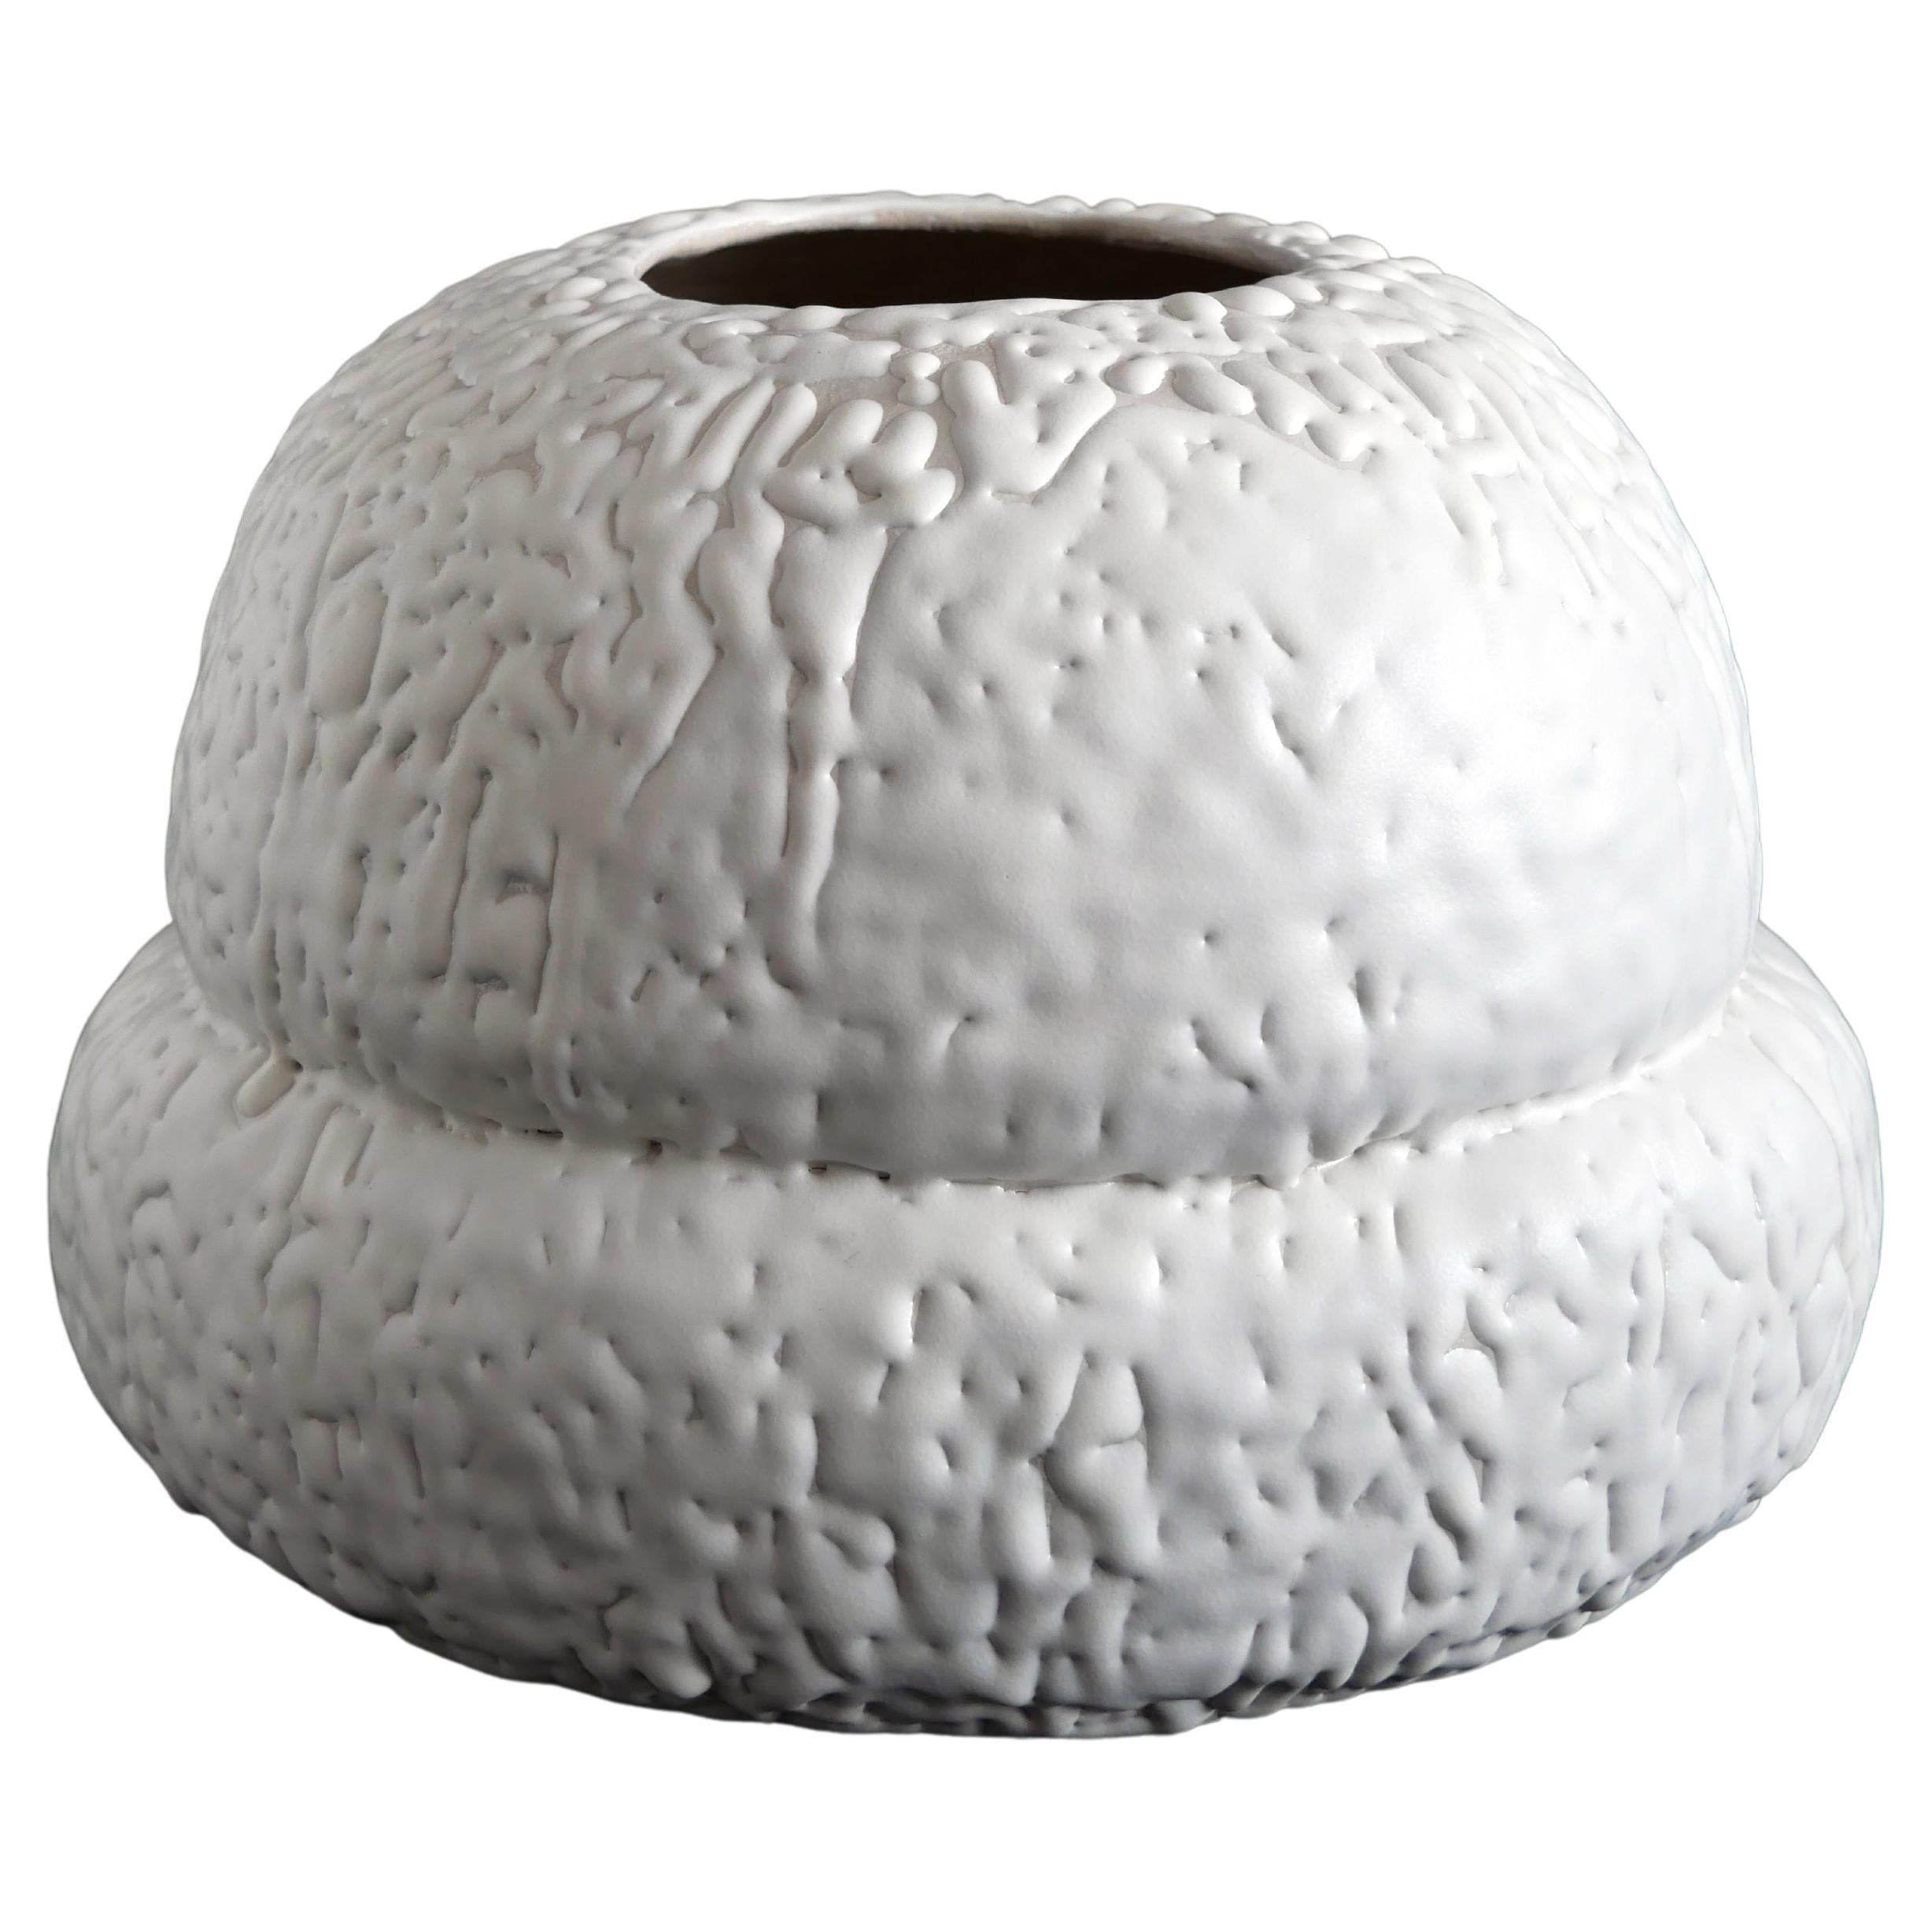 Vase Sugar Frost, französisches zeitgenössisches Céramique